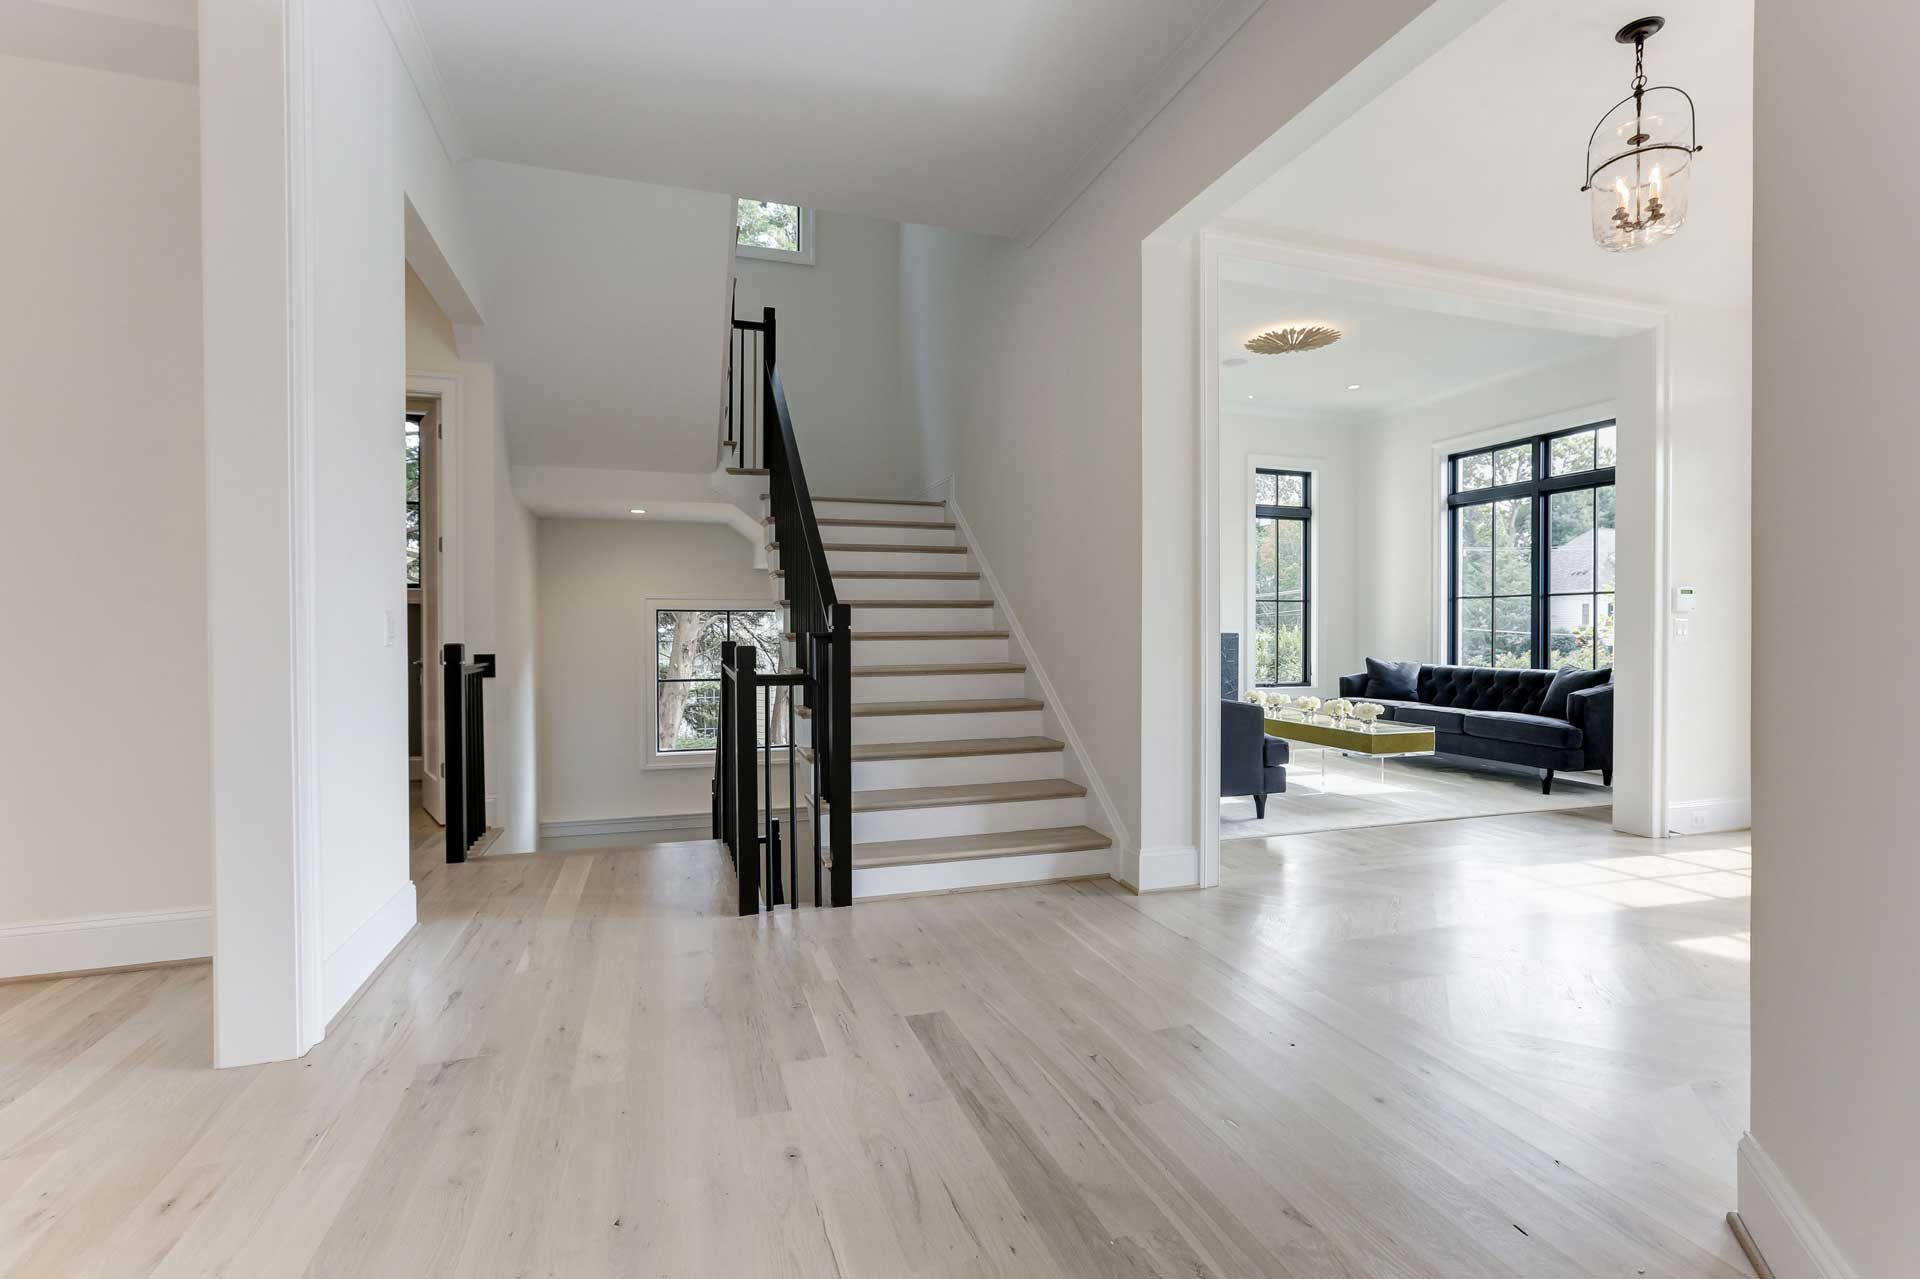 Image of Stunning white oak flooring with custom finish